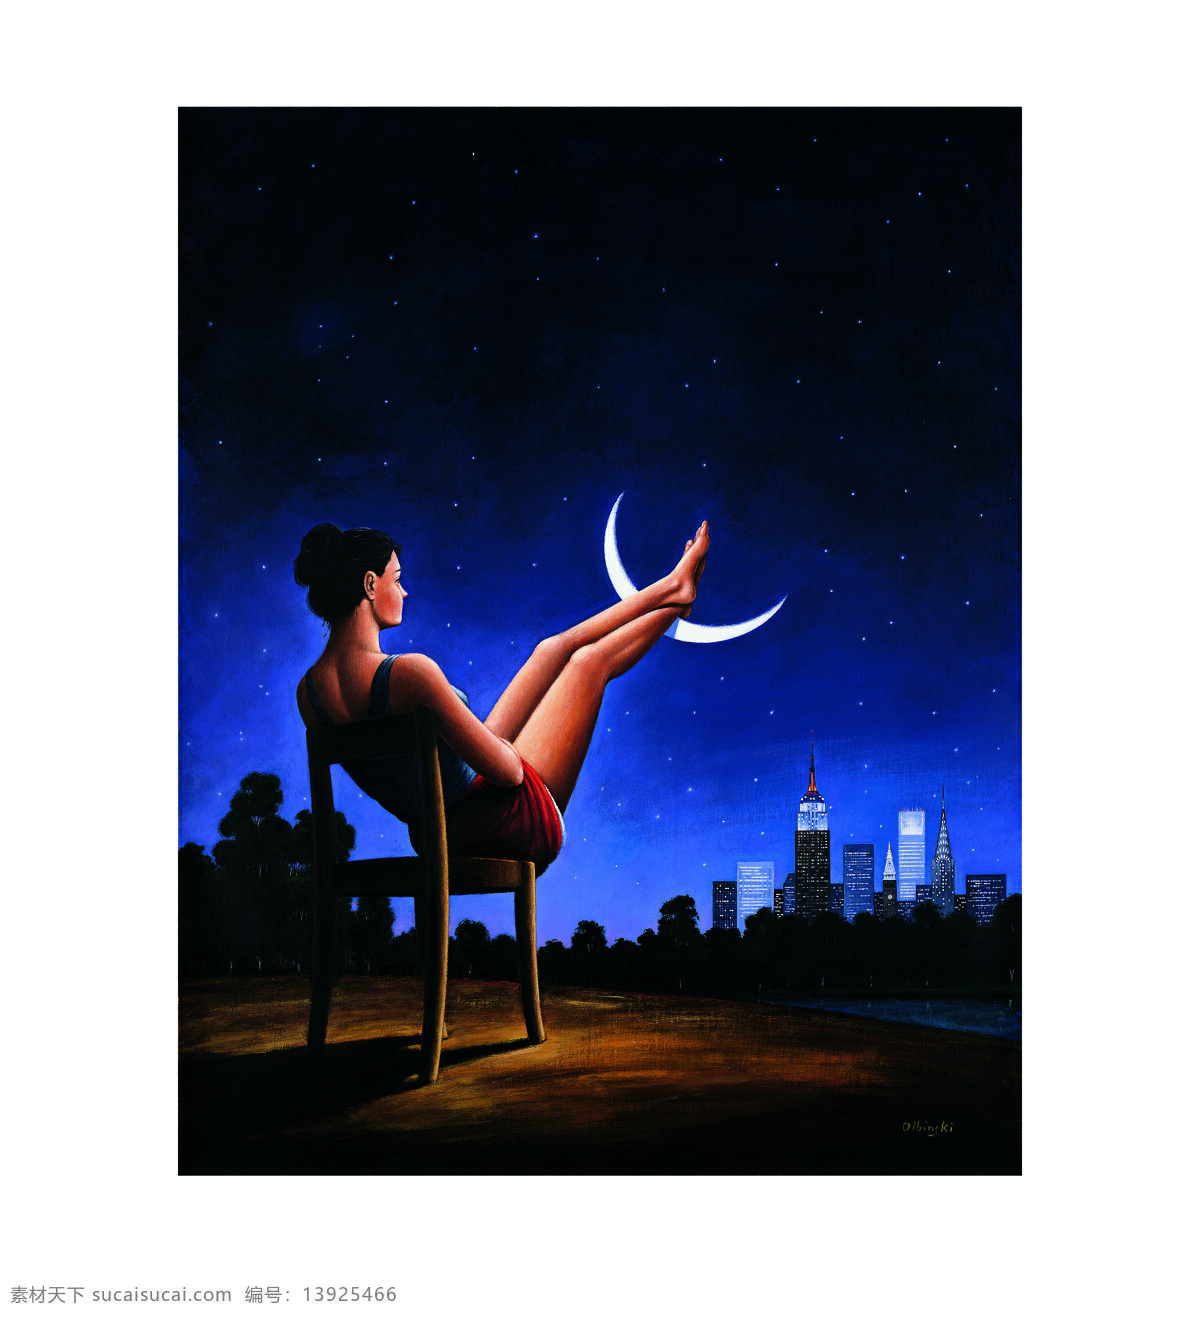 创意 画家 绘画书法 联想 女人 文化艺术 夜晚 月亮 超现实主义 绘画 设计素材 模板下载 rafal olbinski 拉法尔 奥宾斯基 poetic surrealism 诗意 波兰